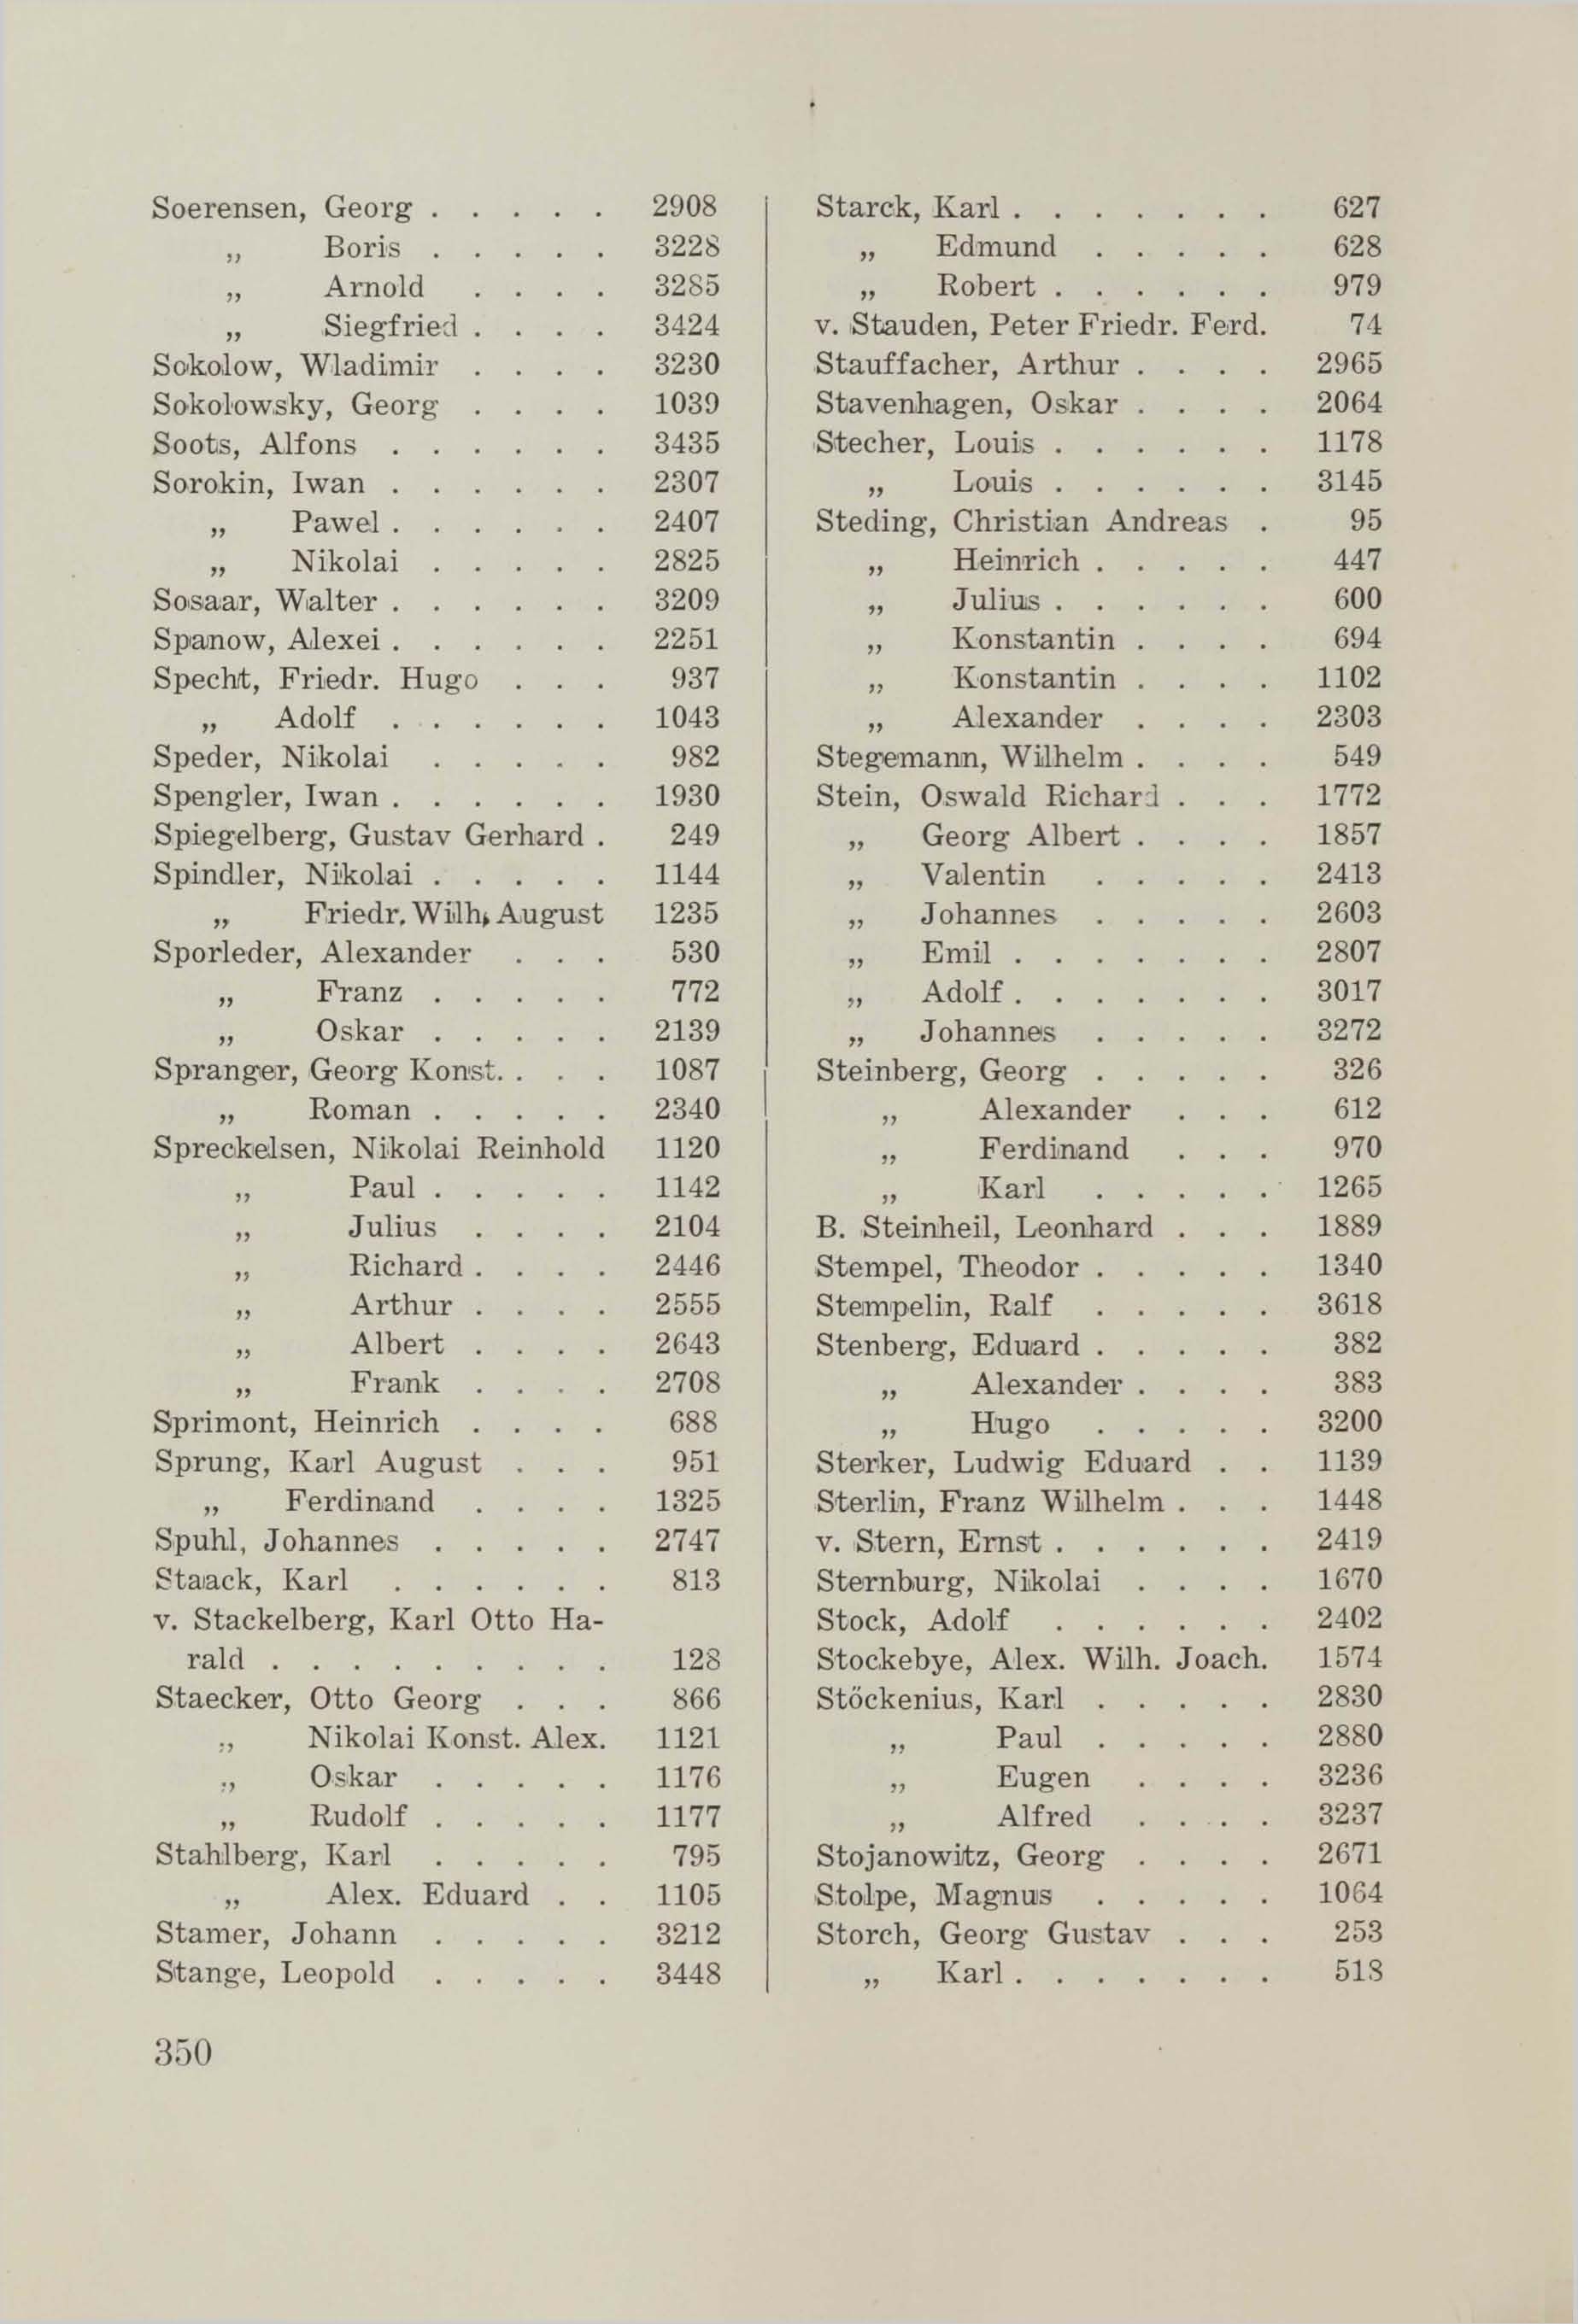 Schüler-Verzeichnis des Revalschen Gouvernements-Gymnasiums 1805–1890 (1931) | 360. (350) Main body of text